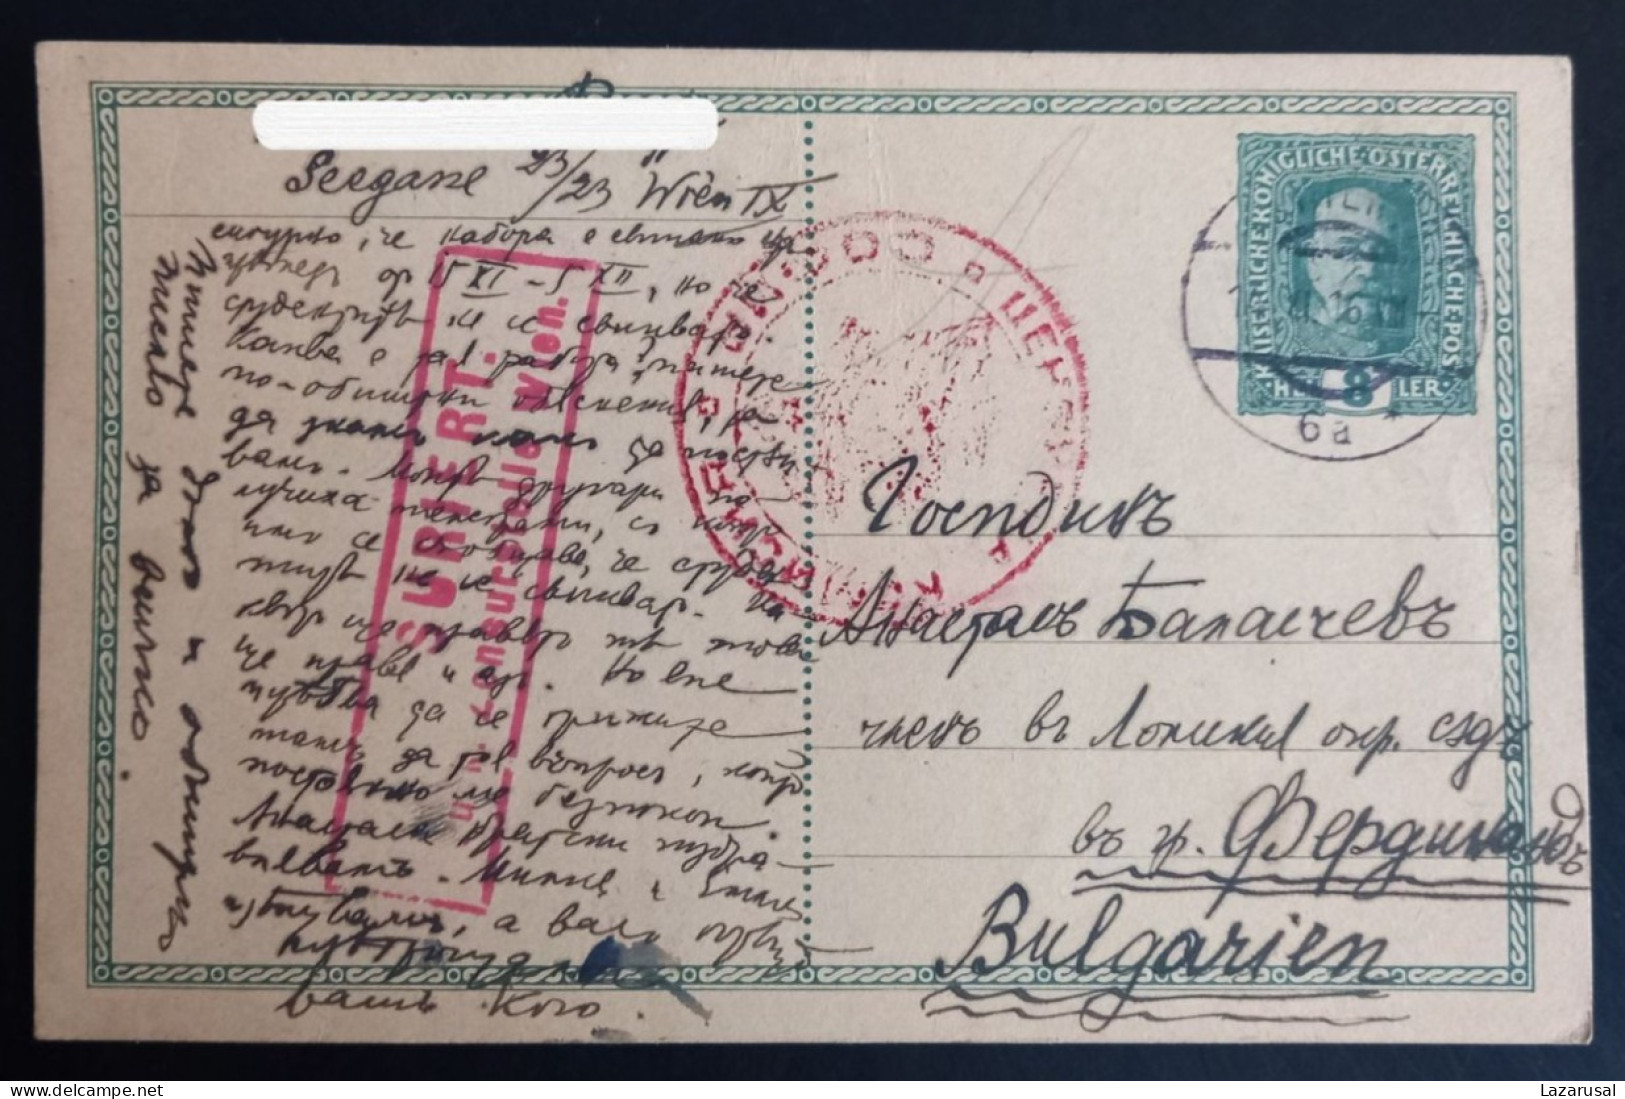 Lot #1  AUSTRIA WIEN WW I 1916 DOUBLE CENSORED Sofia Wien KUK Postal Stationery To Bulgaria - Cartes Postales